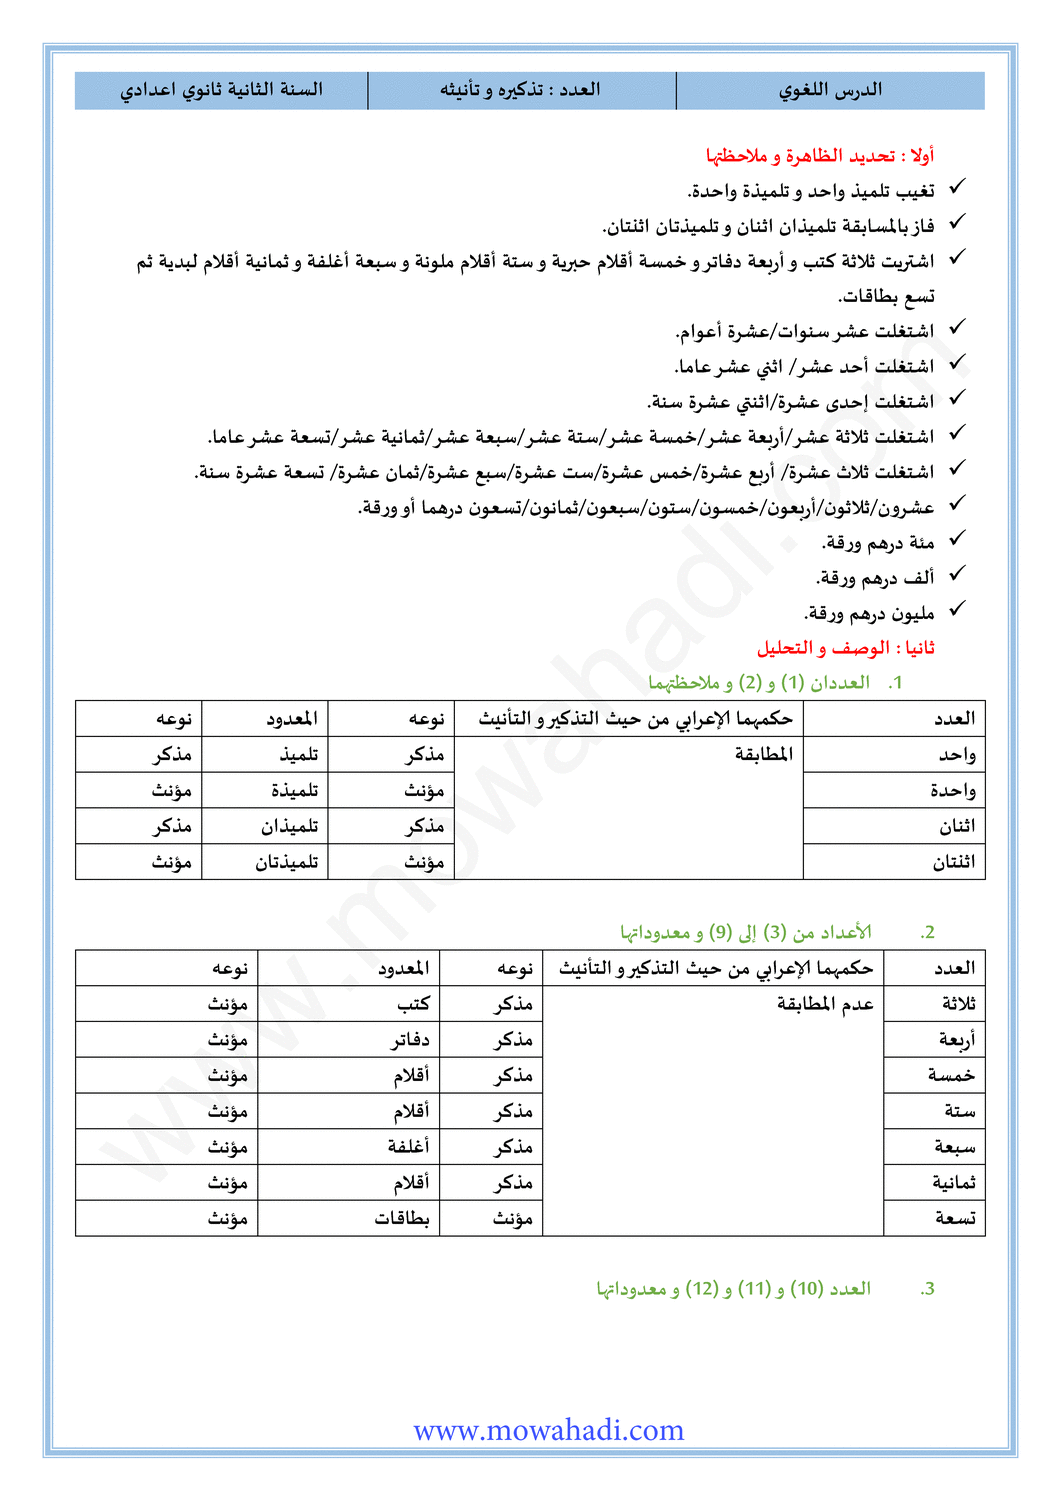 الدرس اللغوي العدد تذكيره و ثأنيته للسنة الثانية اعدادي في مادة اللغة العربية